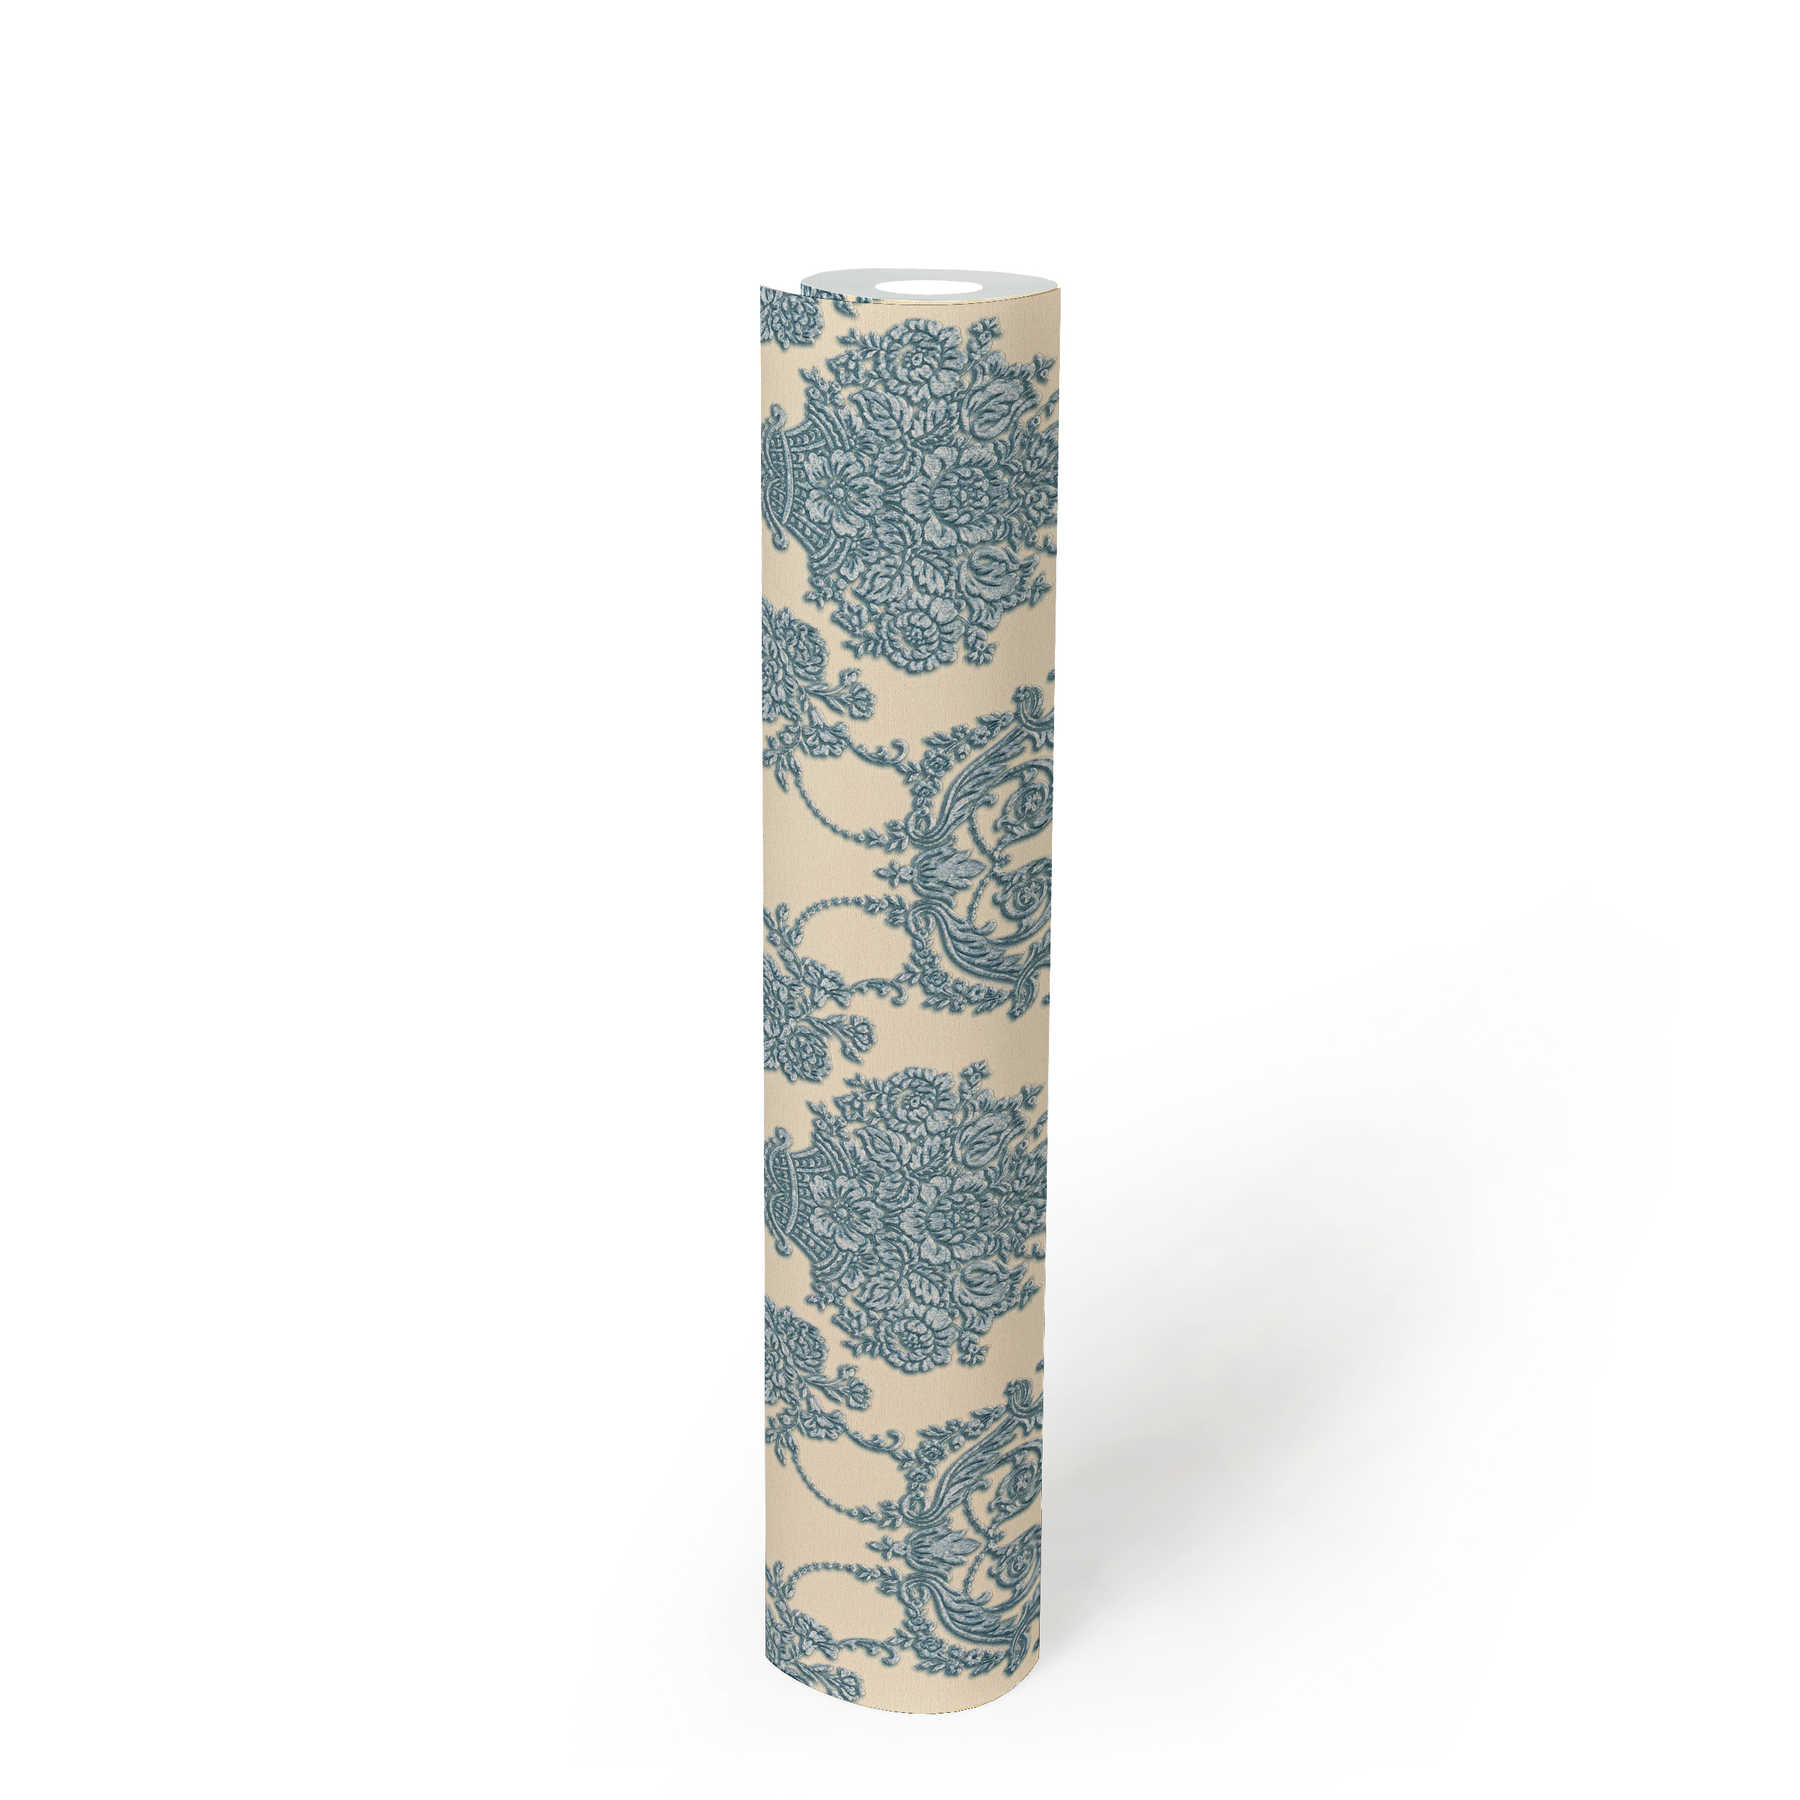             Carta da parati ornamentale floreale con accenti metallici - beige, blu
        